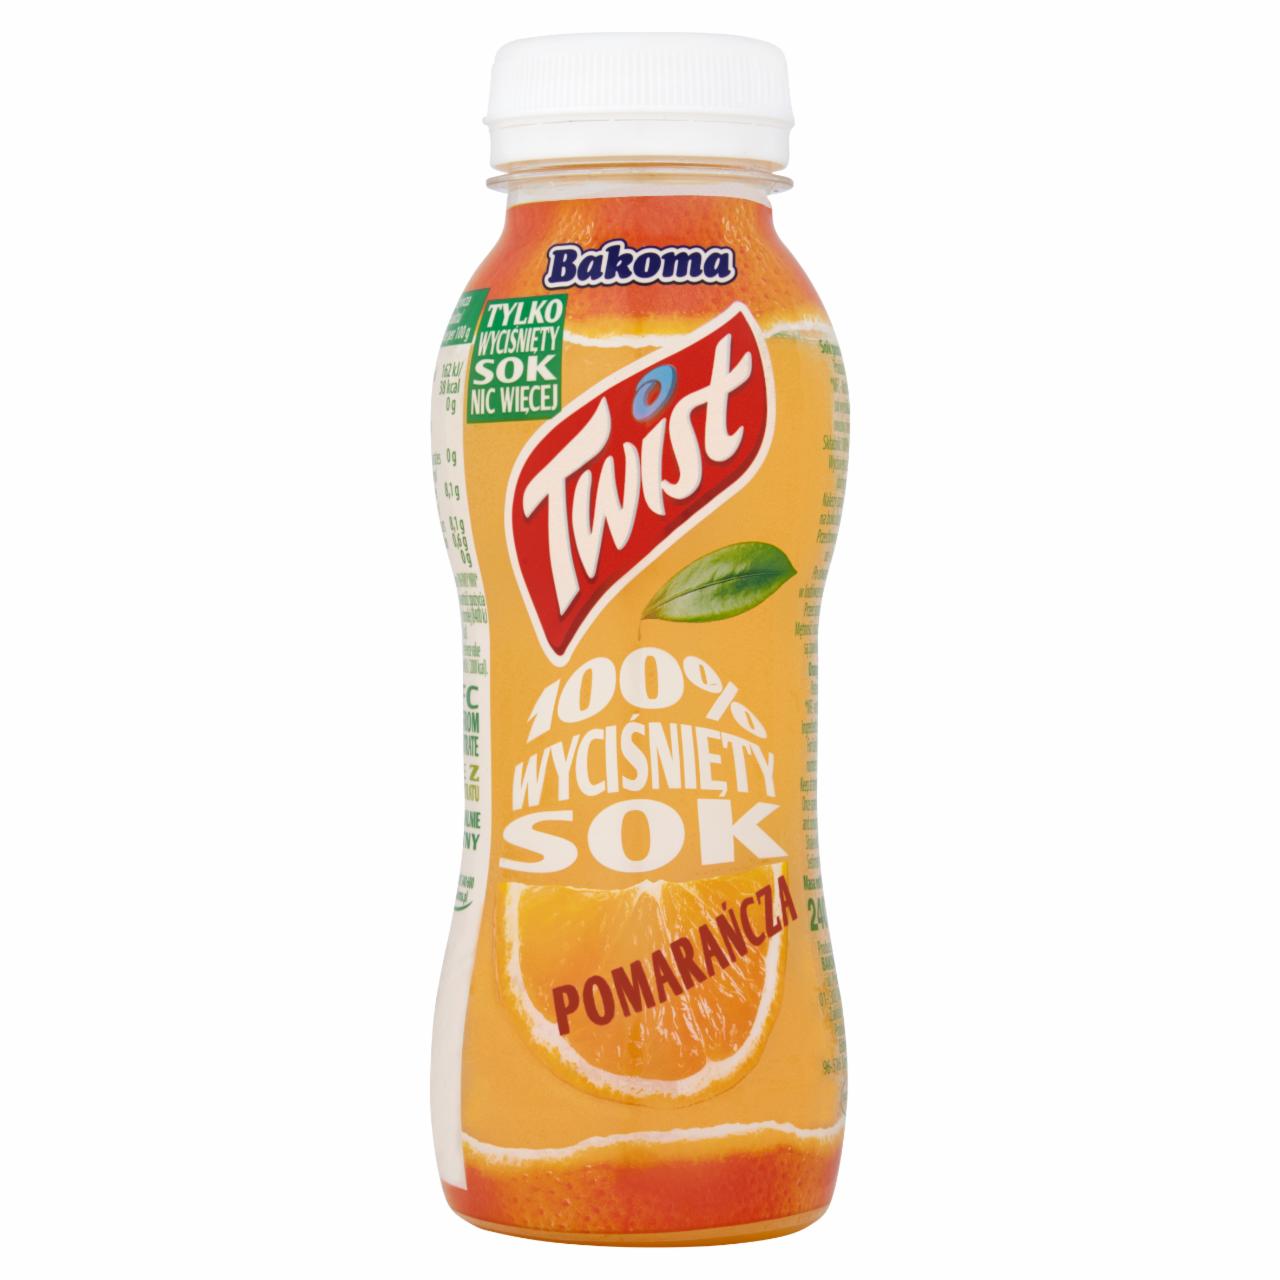 Zdjęcia - Bakoma Twist 100% wyciśnięty sok pomarańcza 240 g